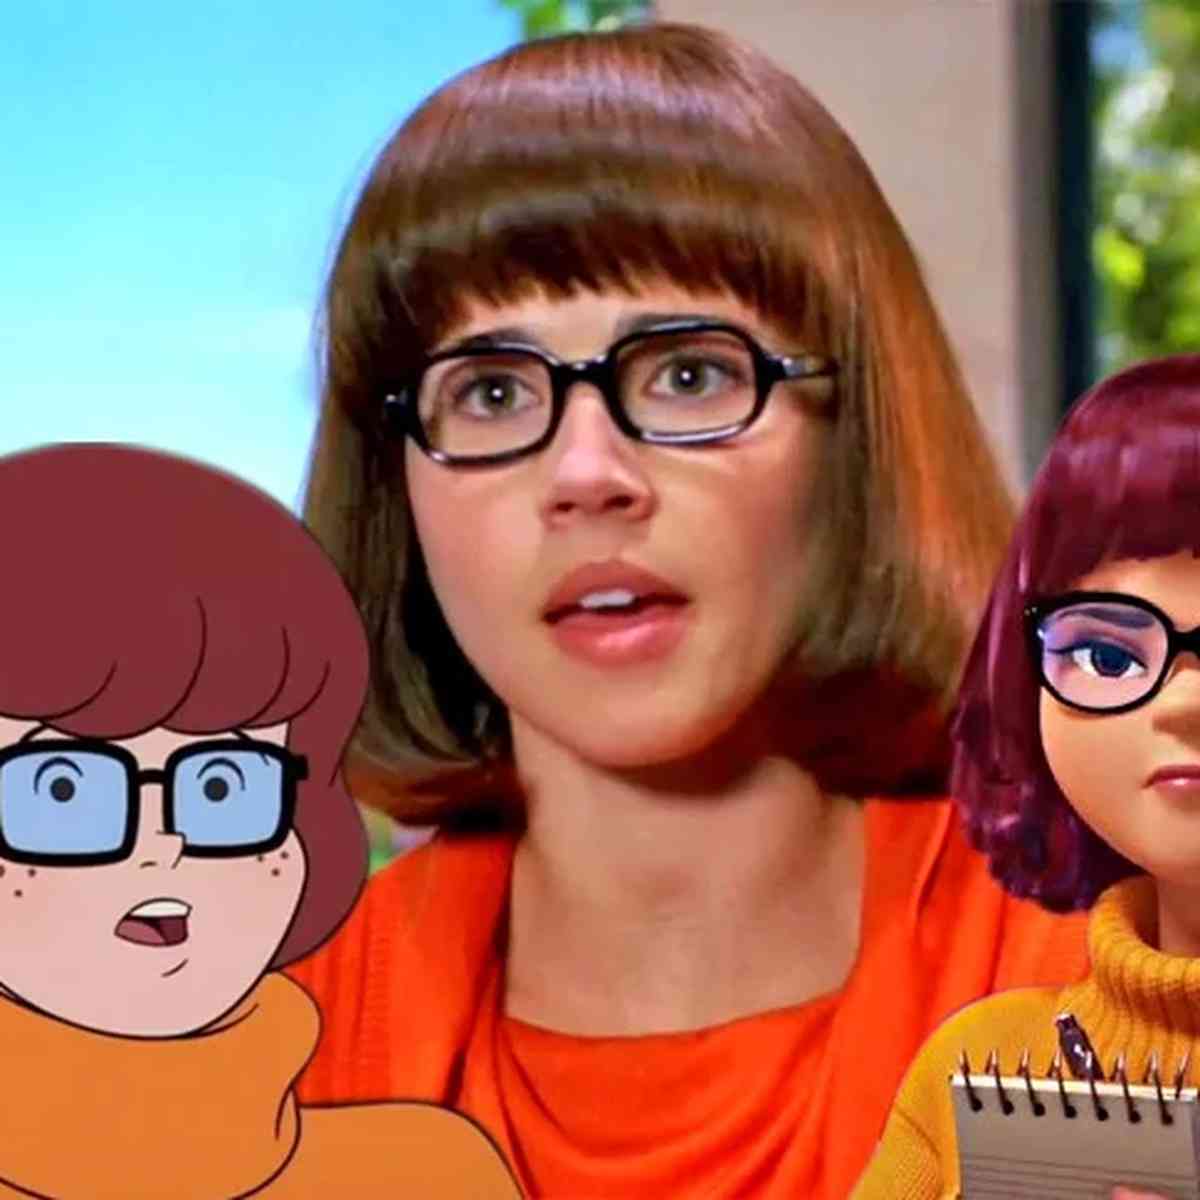 HBO Max divulga primeiro pôster oficial de Velma